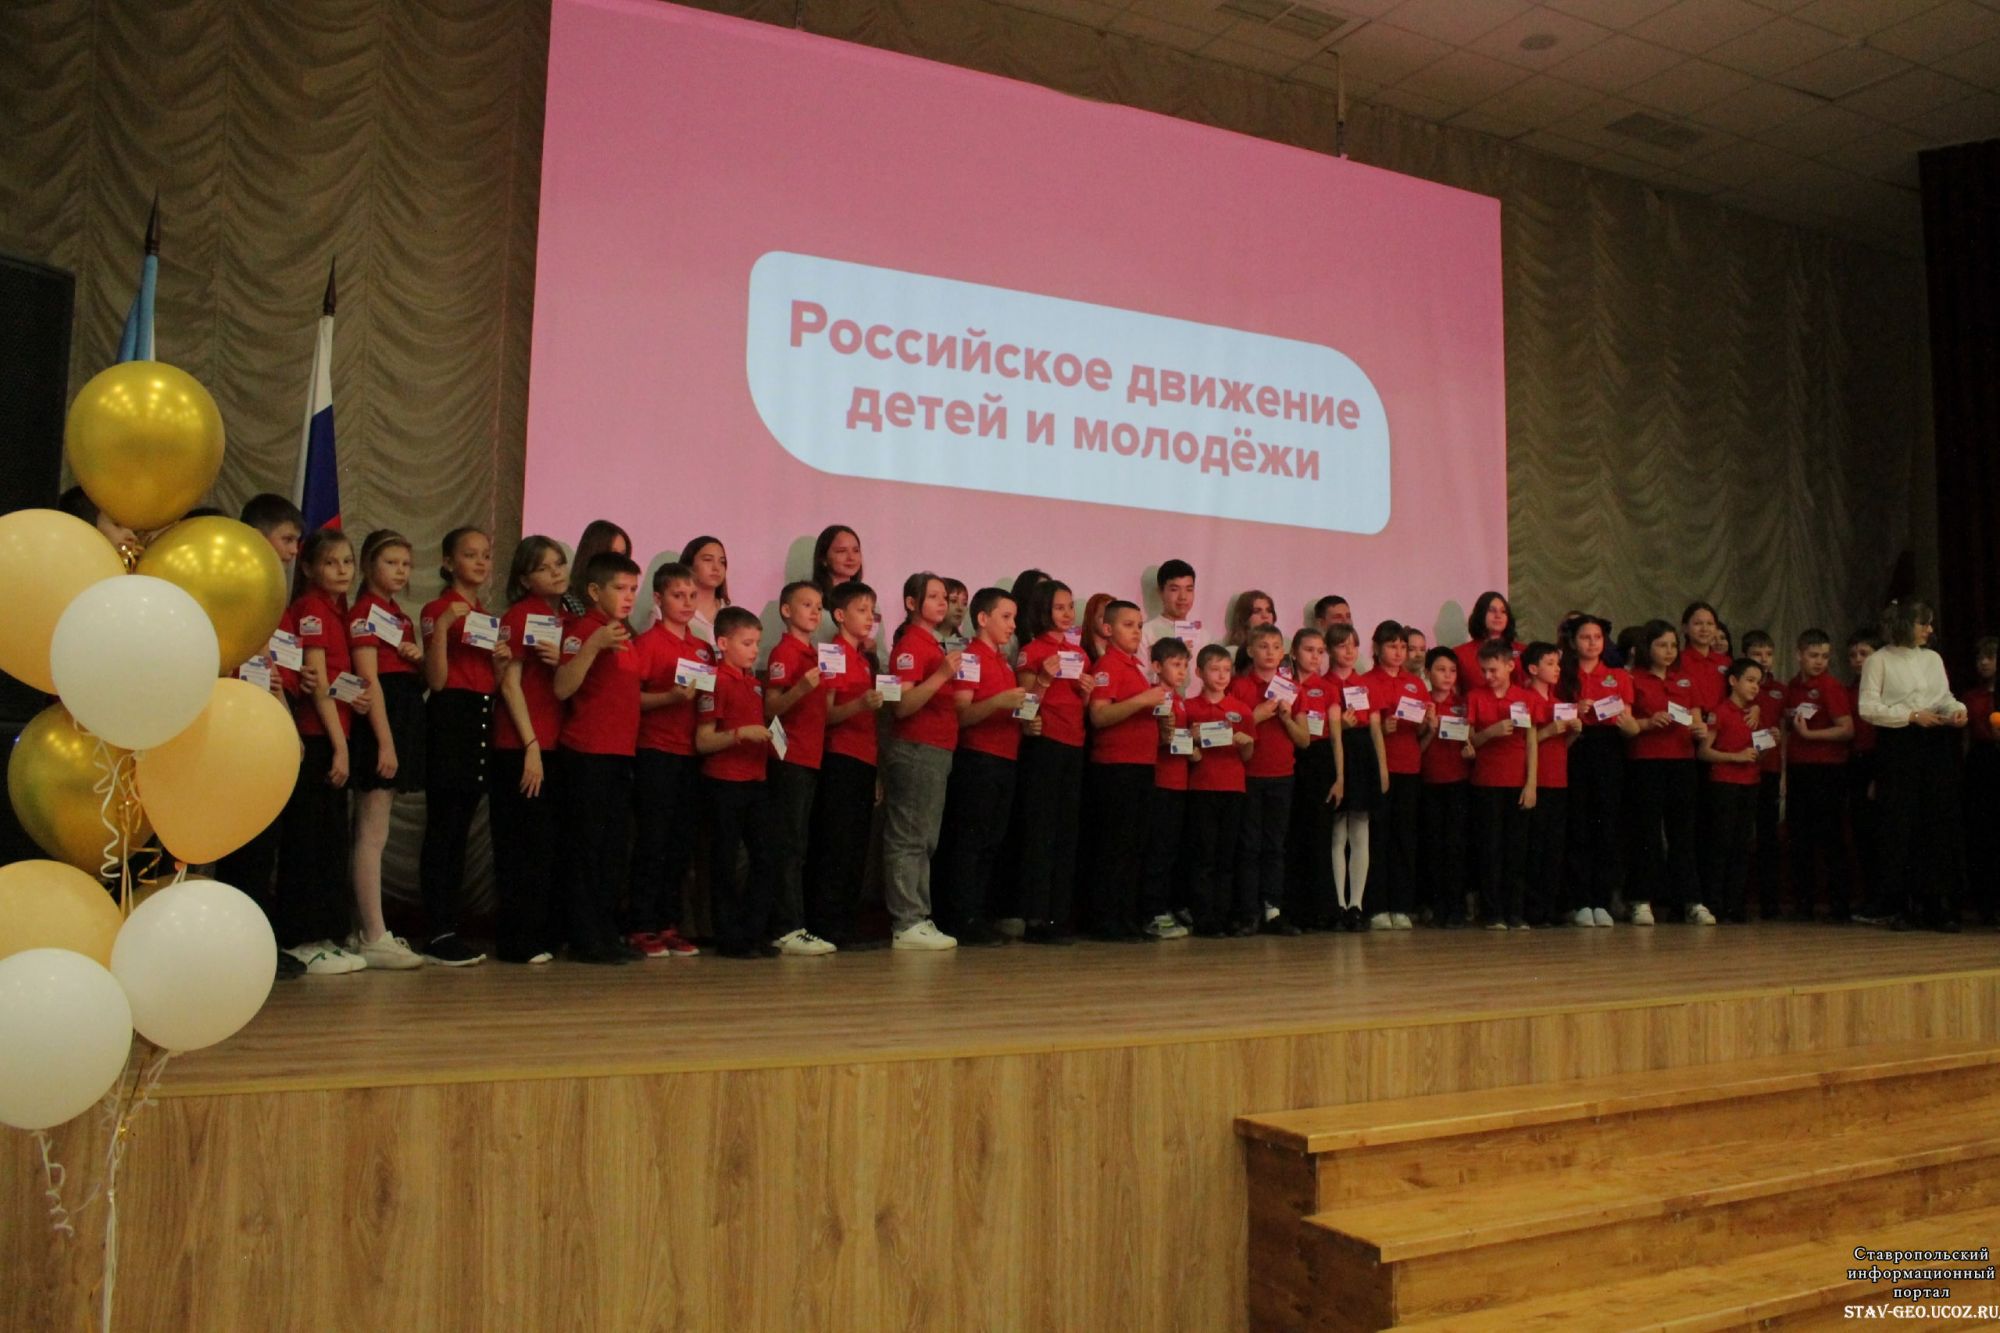 Открылось первичное отделение Российского Движения Детей и Молодежи!